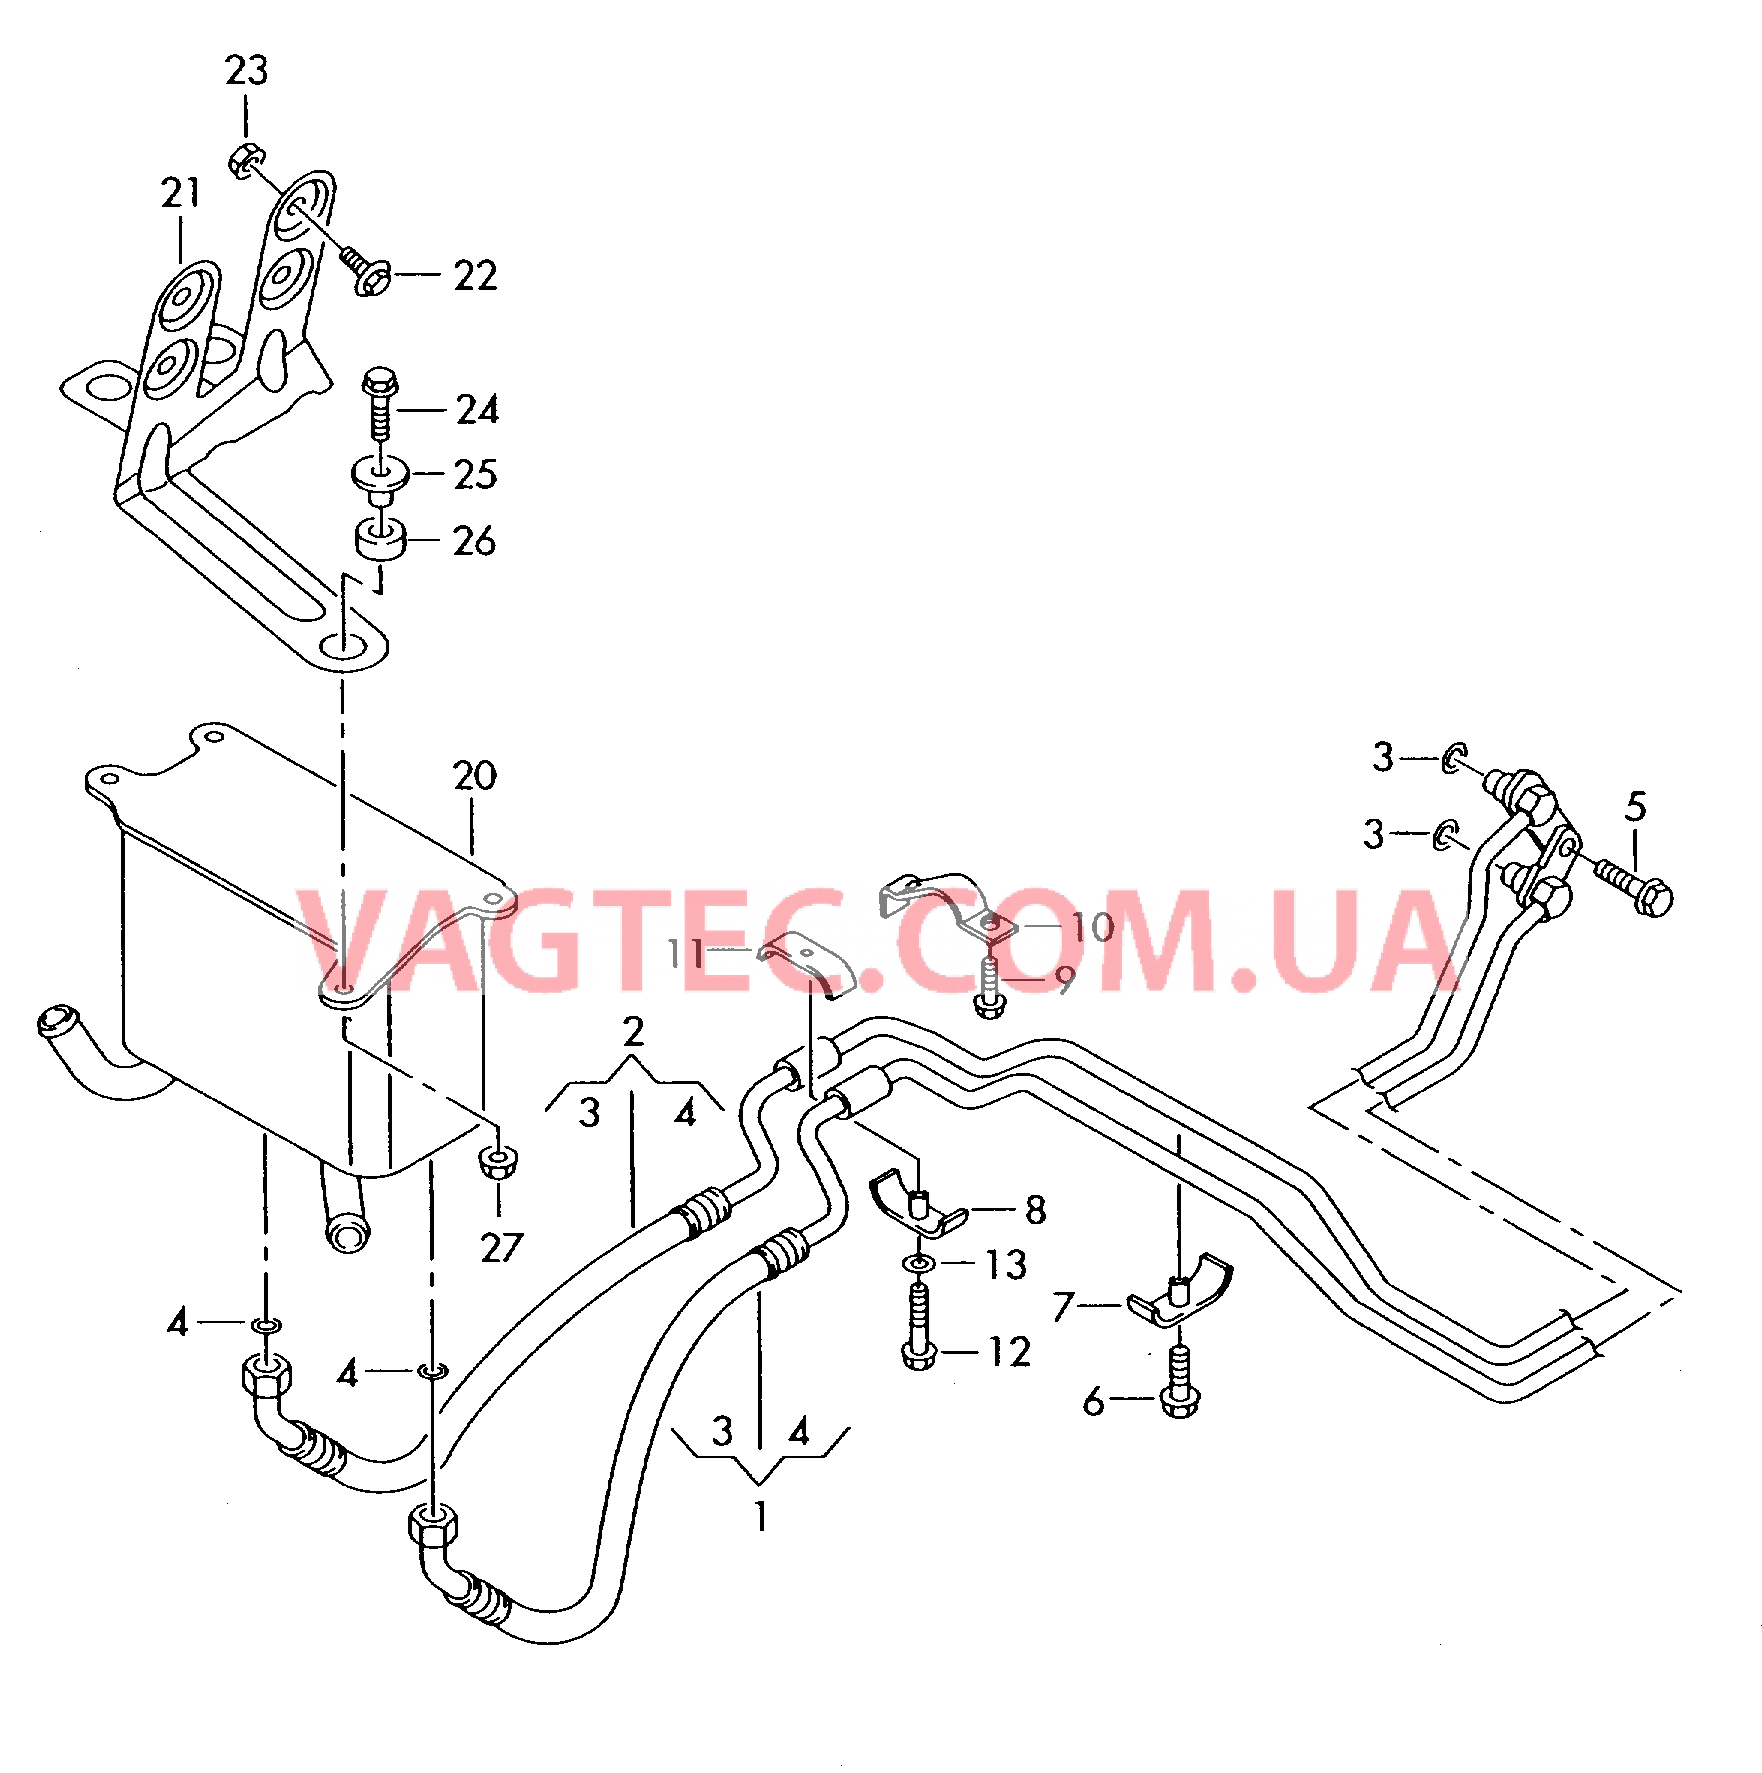 Напорный маслопровод для охлаждения масла коробки передач  для 5-ступенчатой АКП  для VOLKSWAGEN Phaeton 2002